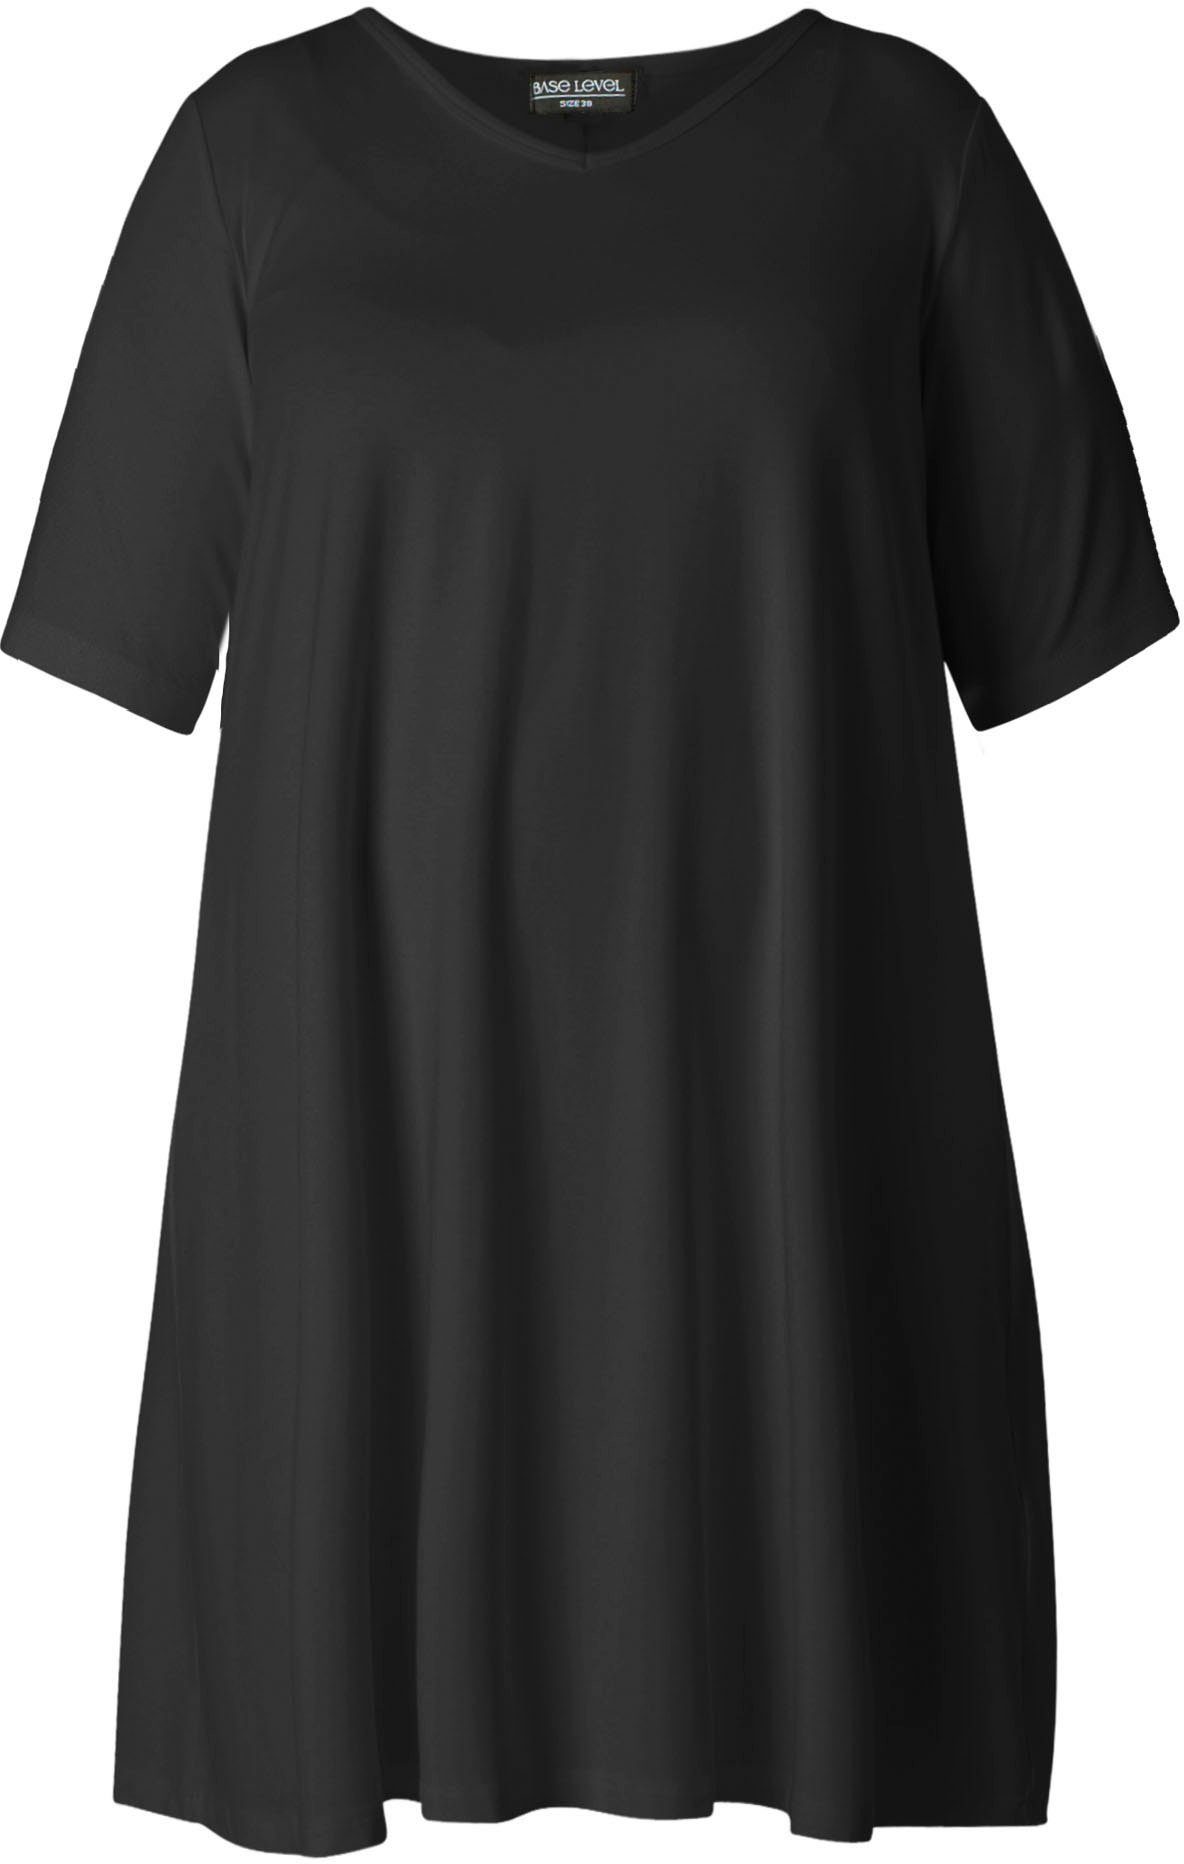 Form Curvy Level black leicht ausgestellter Base In Shirtkleid Abernathy